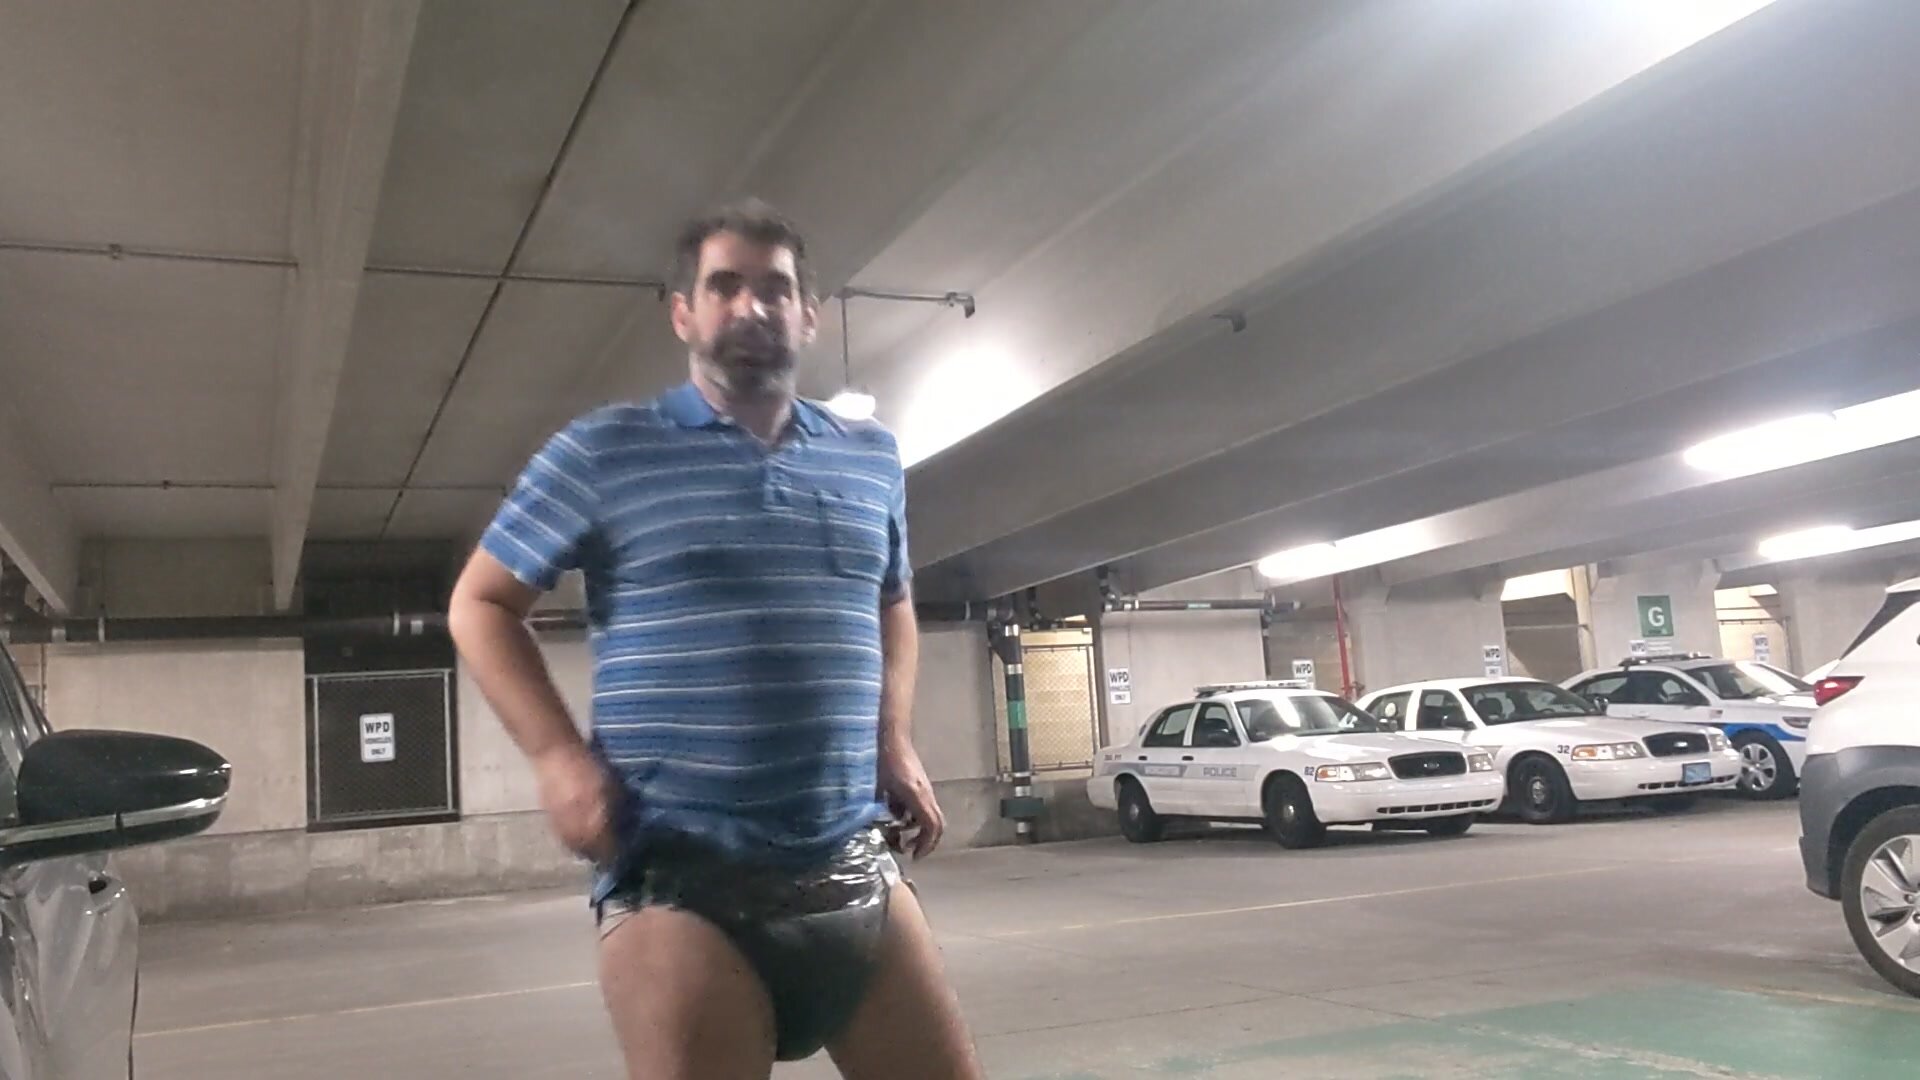 Exposing my diaper in parking garage